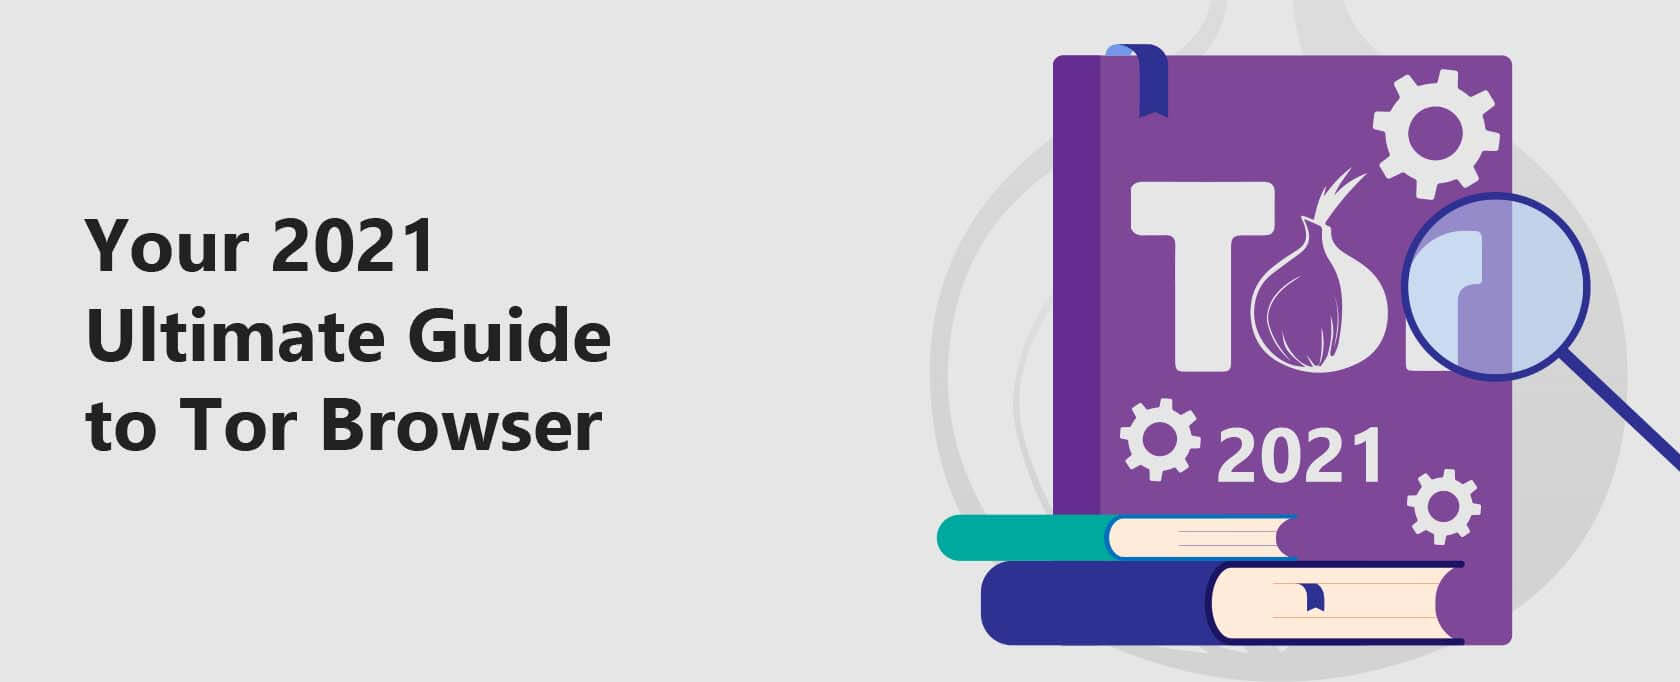 Tor browser pda mega тор браузер для айфона 6 mega